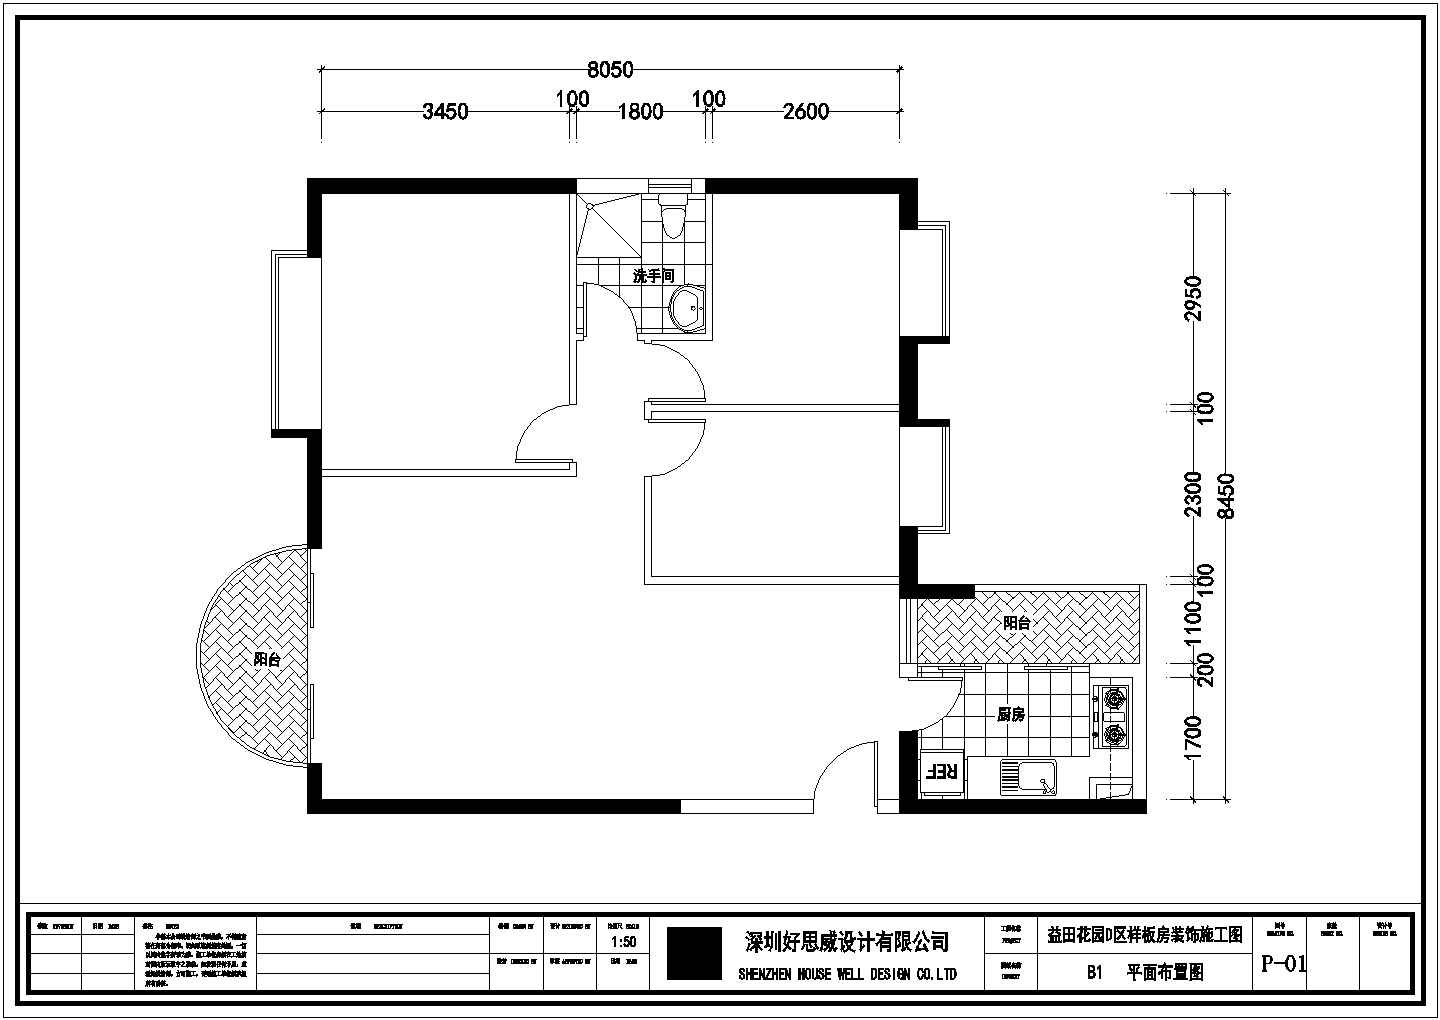 益田花园住宅楼三室两厅户型一整套cad装修设计图纸